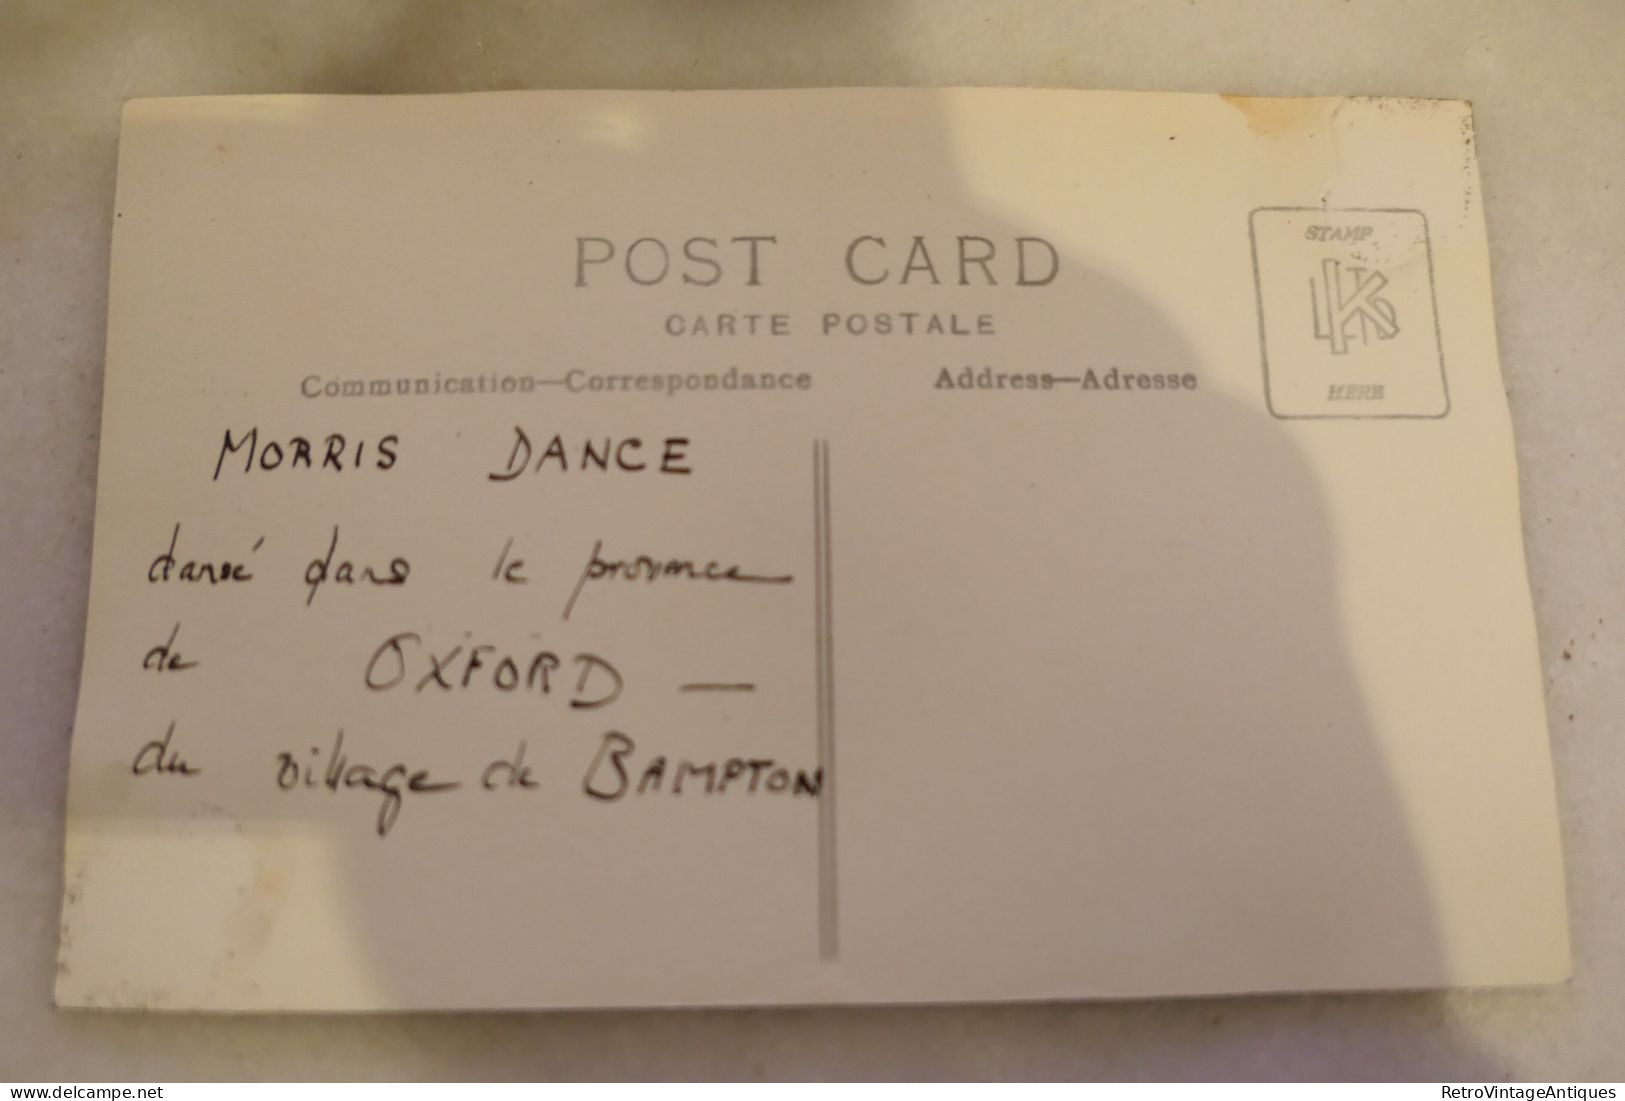 MORRIS DANCE OXFORD BAMPTON - Oxford